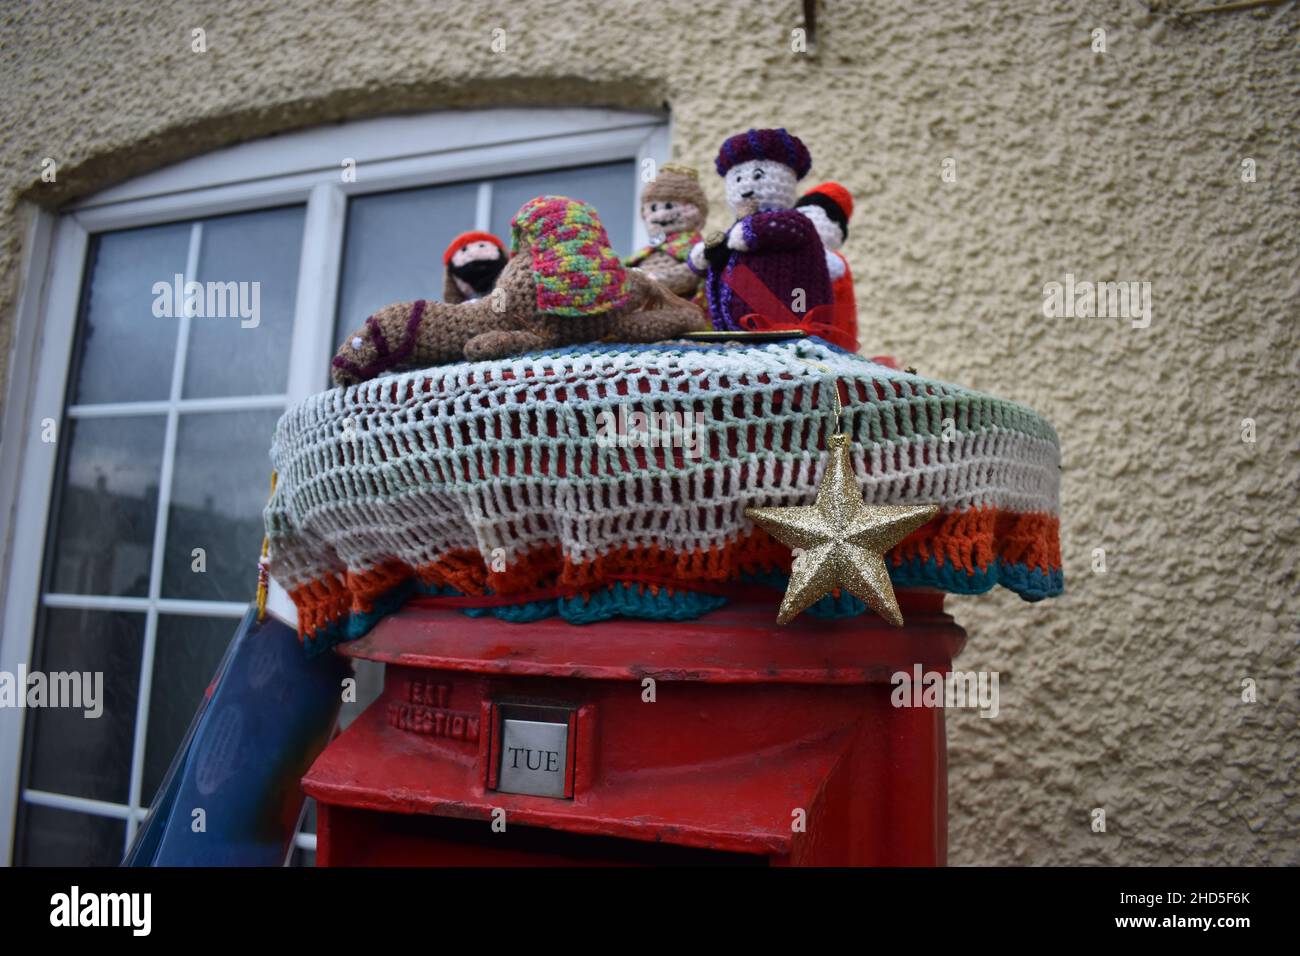 La guérilla tricotage - une scène de nativité de Noël sur une boîte postale à Hockliffe, Bedfordshire. Banque D'Images